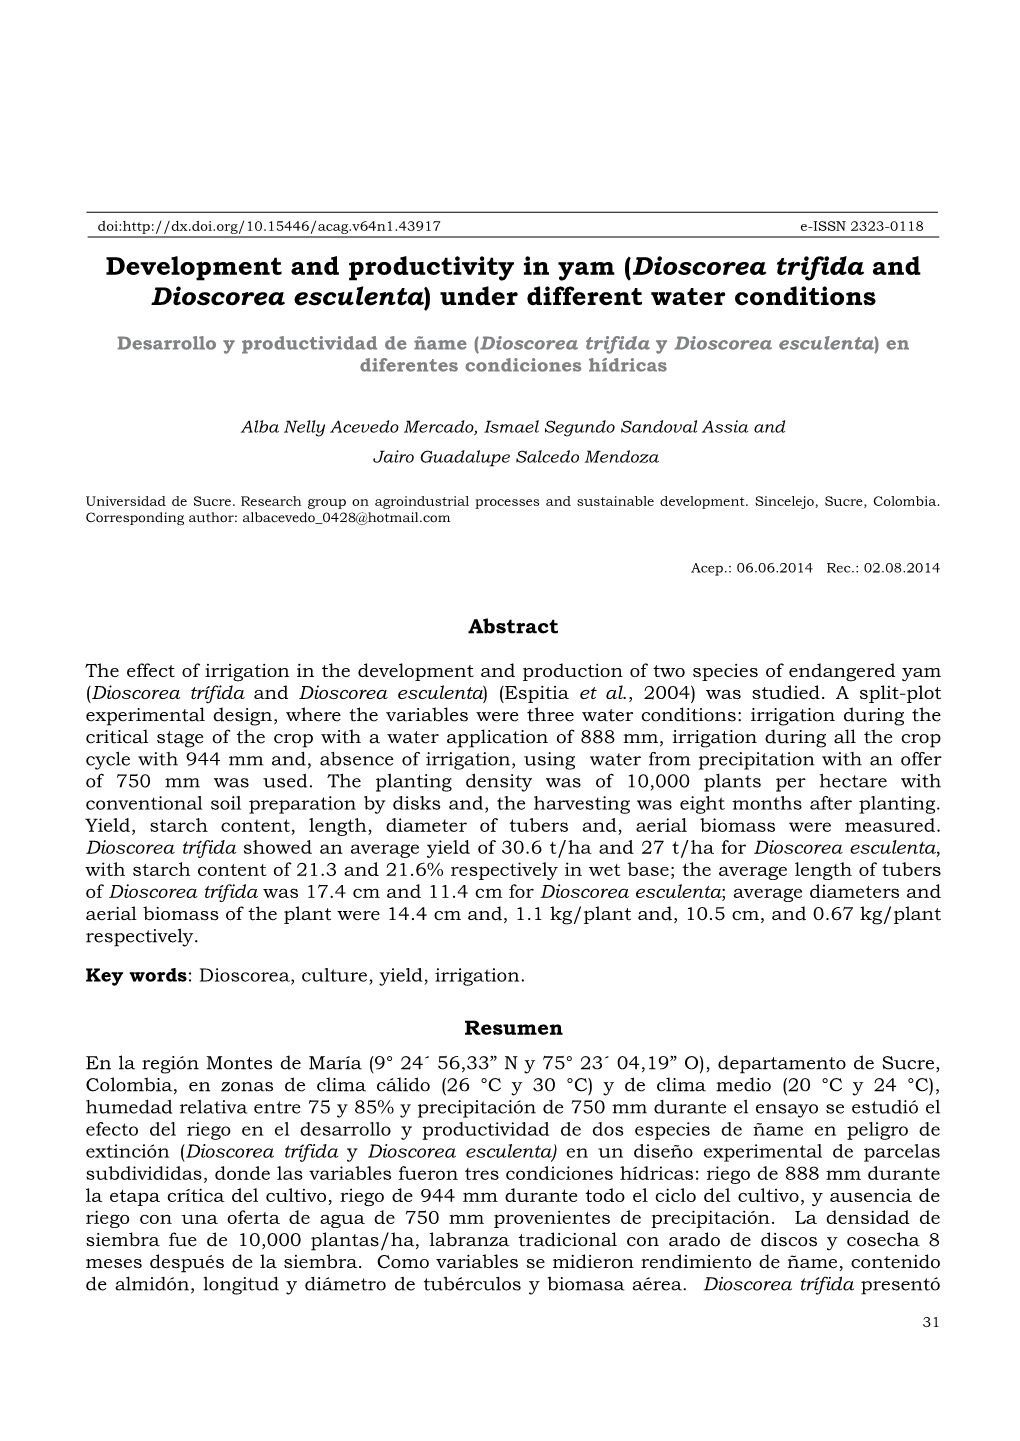 Development and Productivity in Yam (Dioscorea Trifida and Dioscorea Esculenta) Under Different Water Conditions